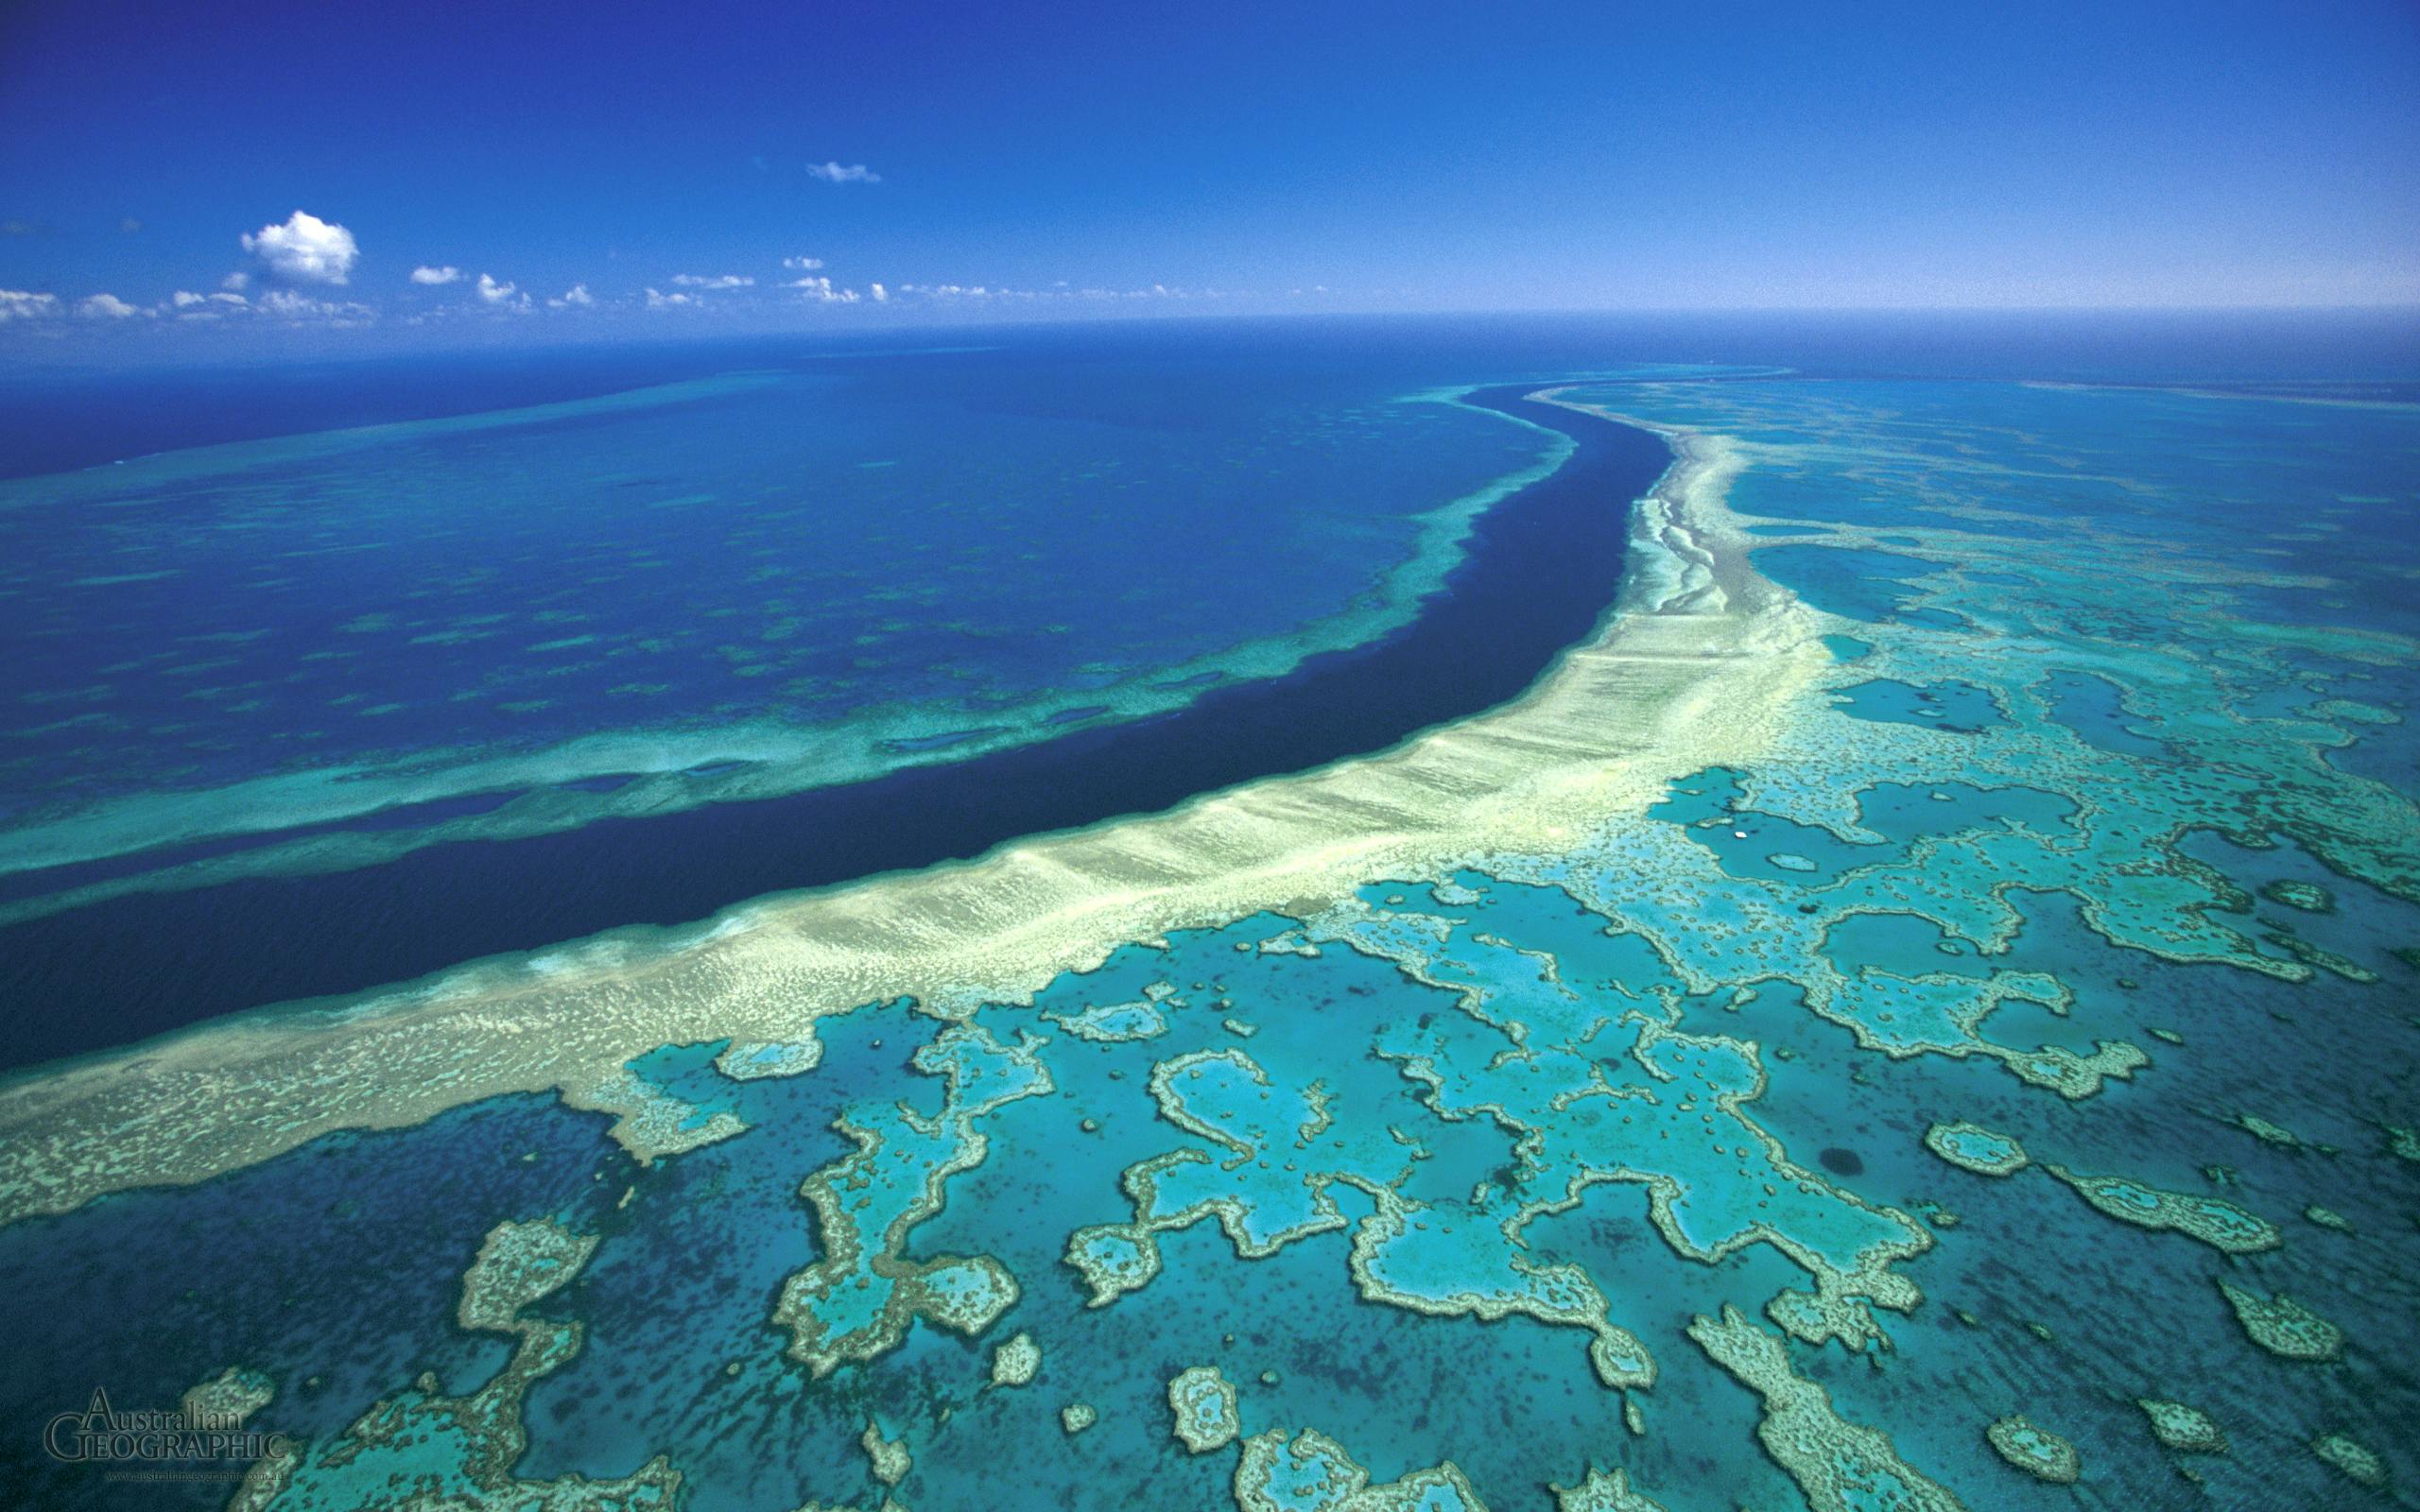 Great Barrier Reef under threat